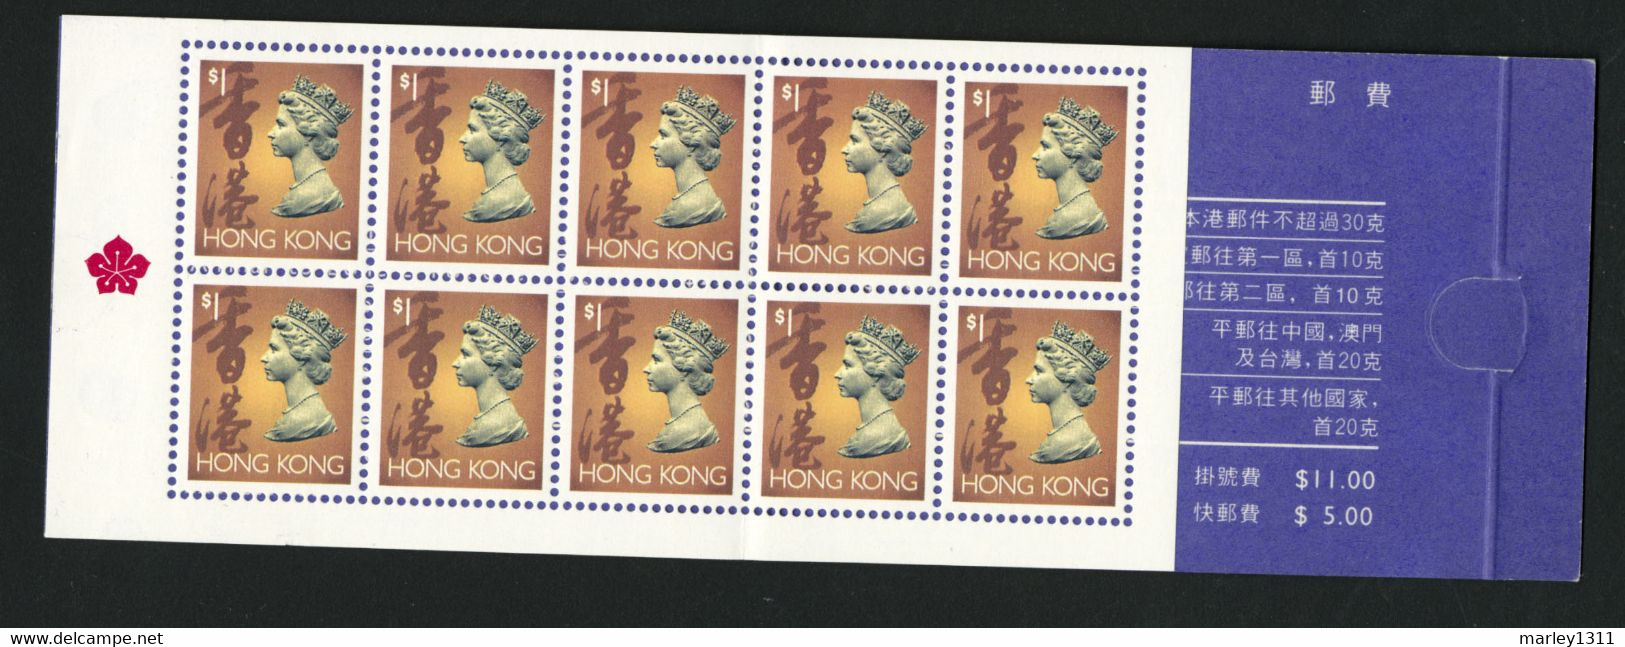 HONG KONG 1992 Carnet YT N° 689a - Postzegelboekjes